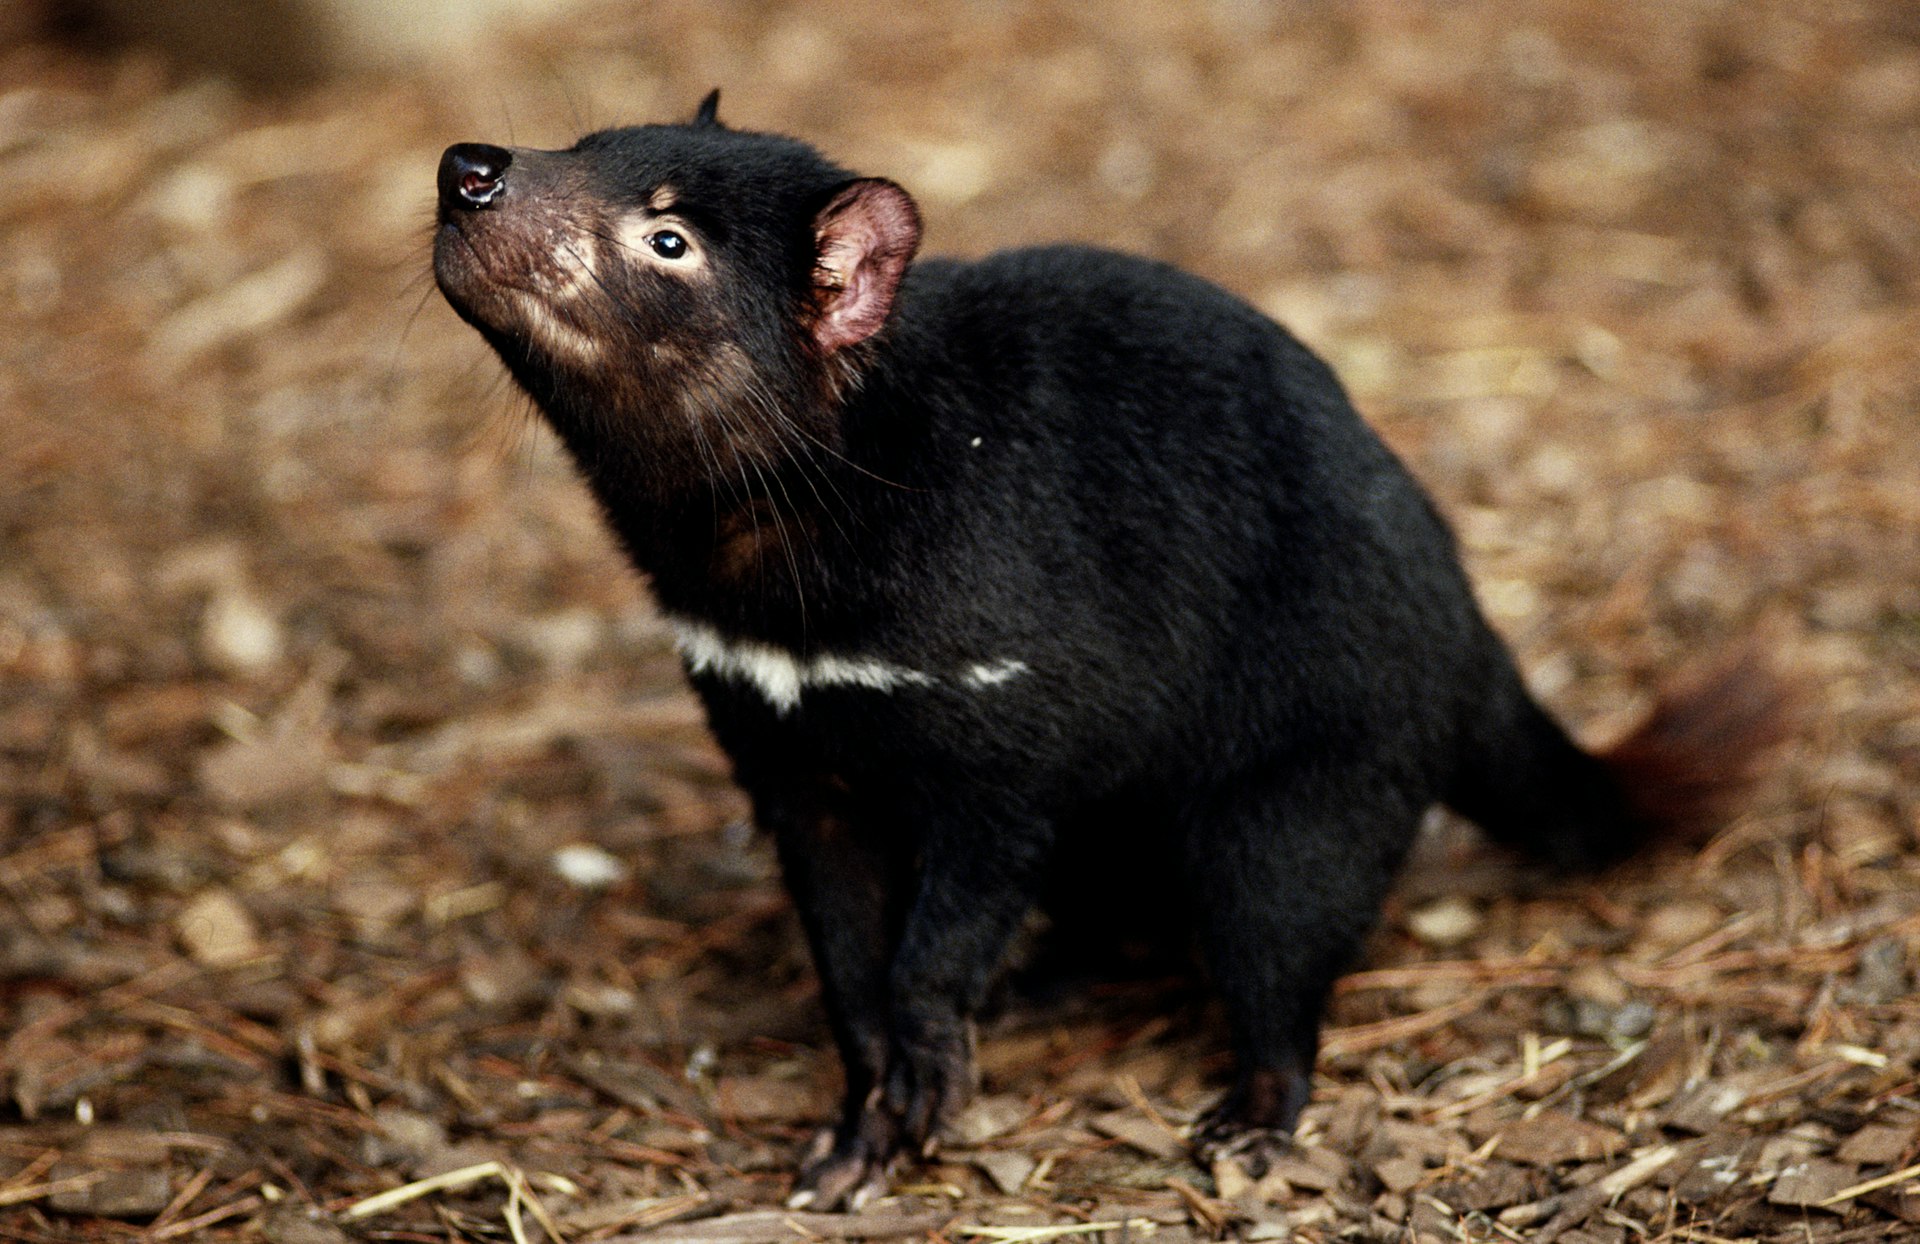 Tasmanian devil (Sarcophilus harrisii)